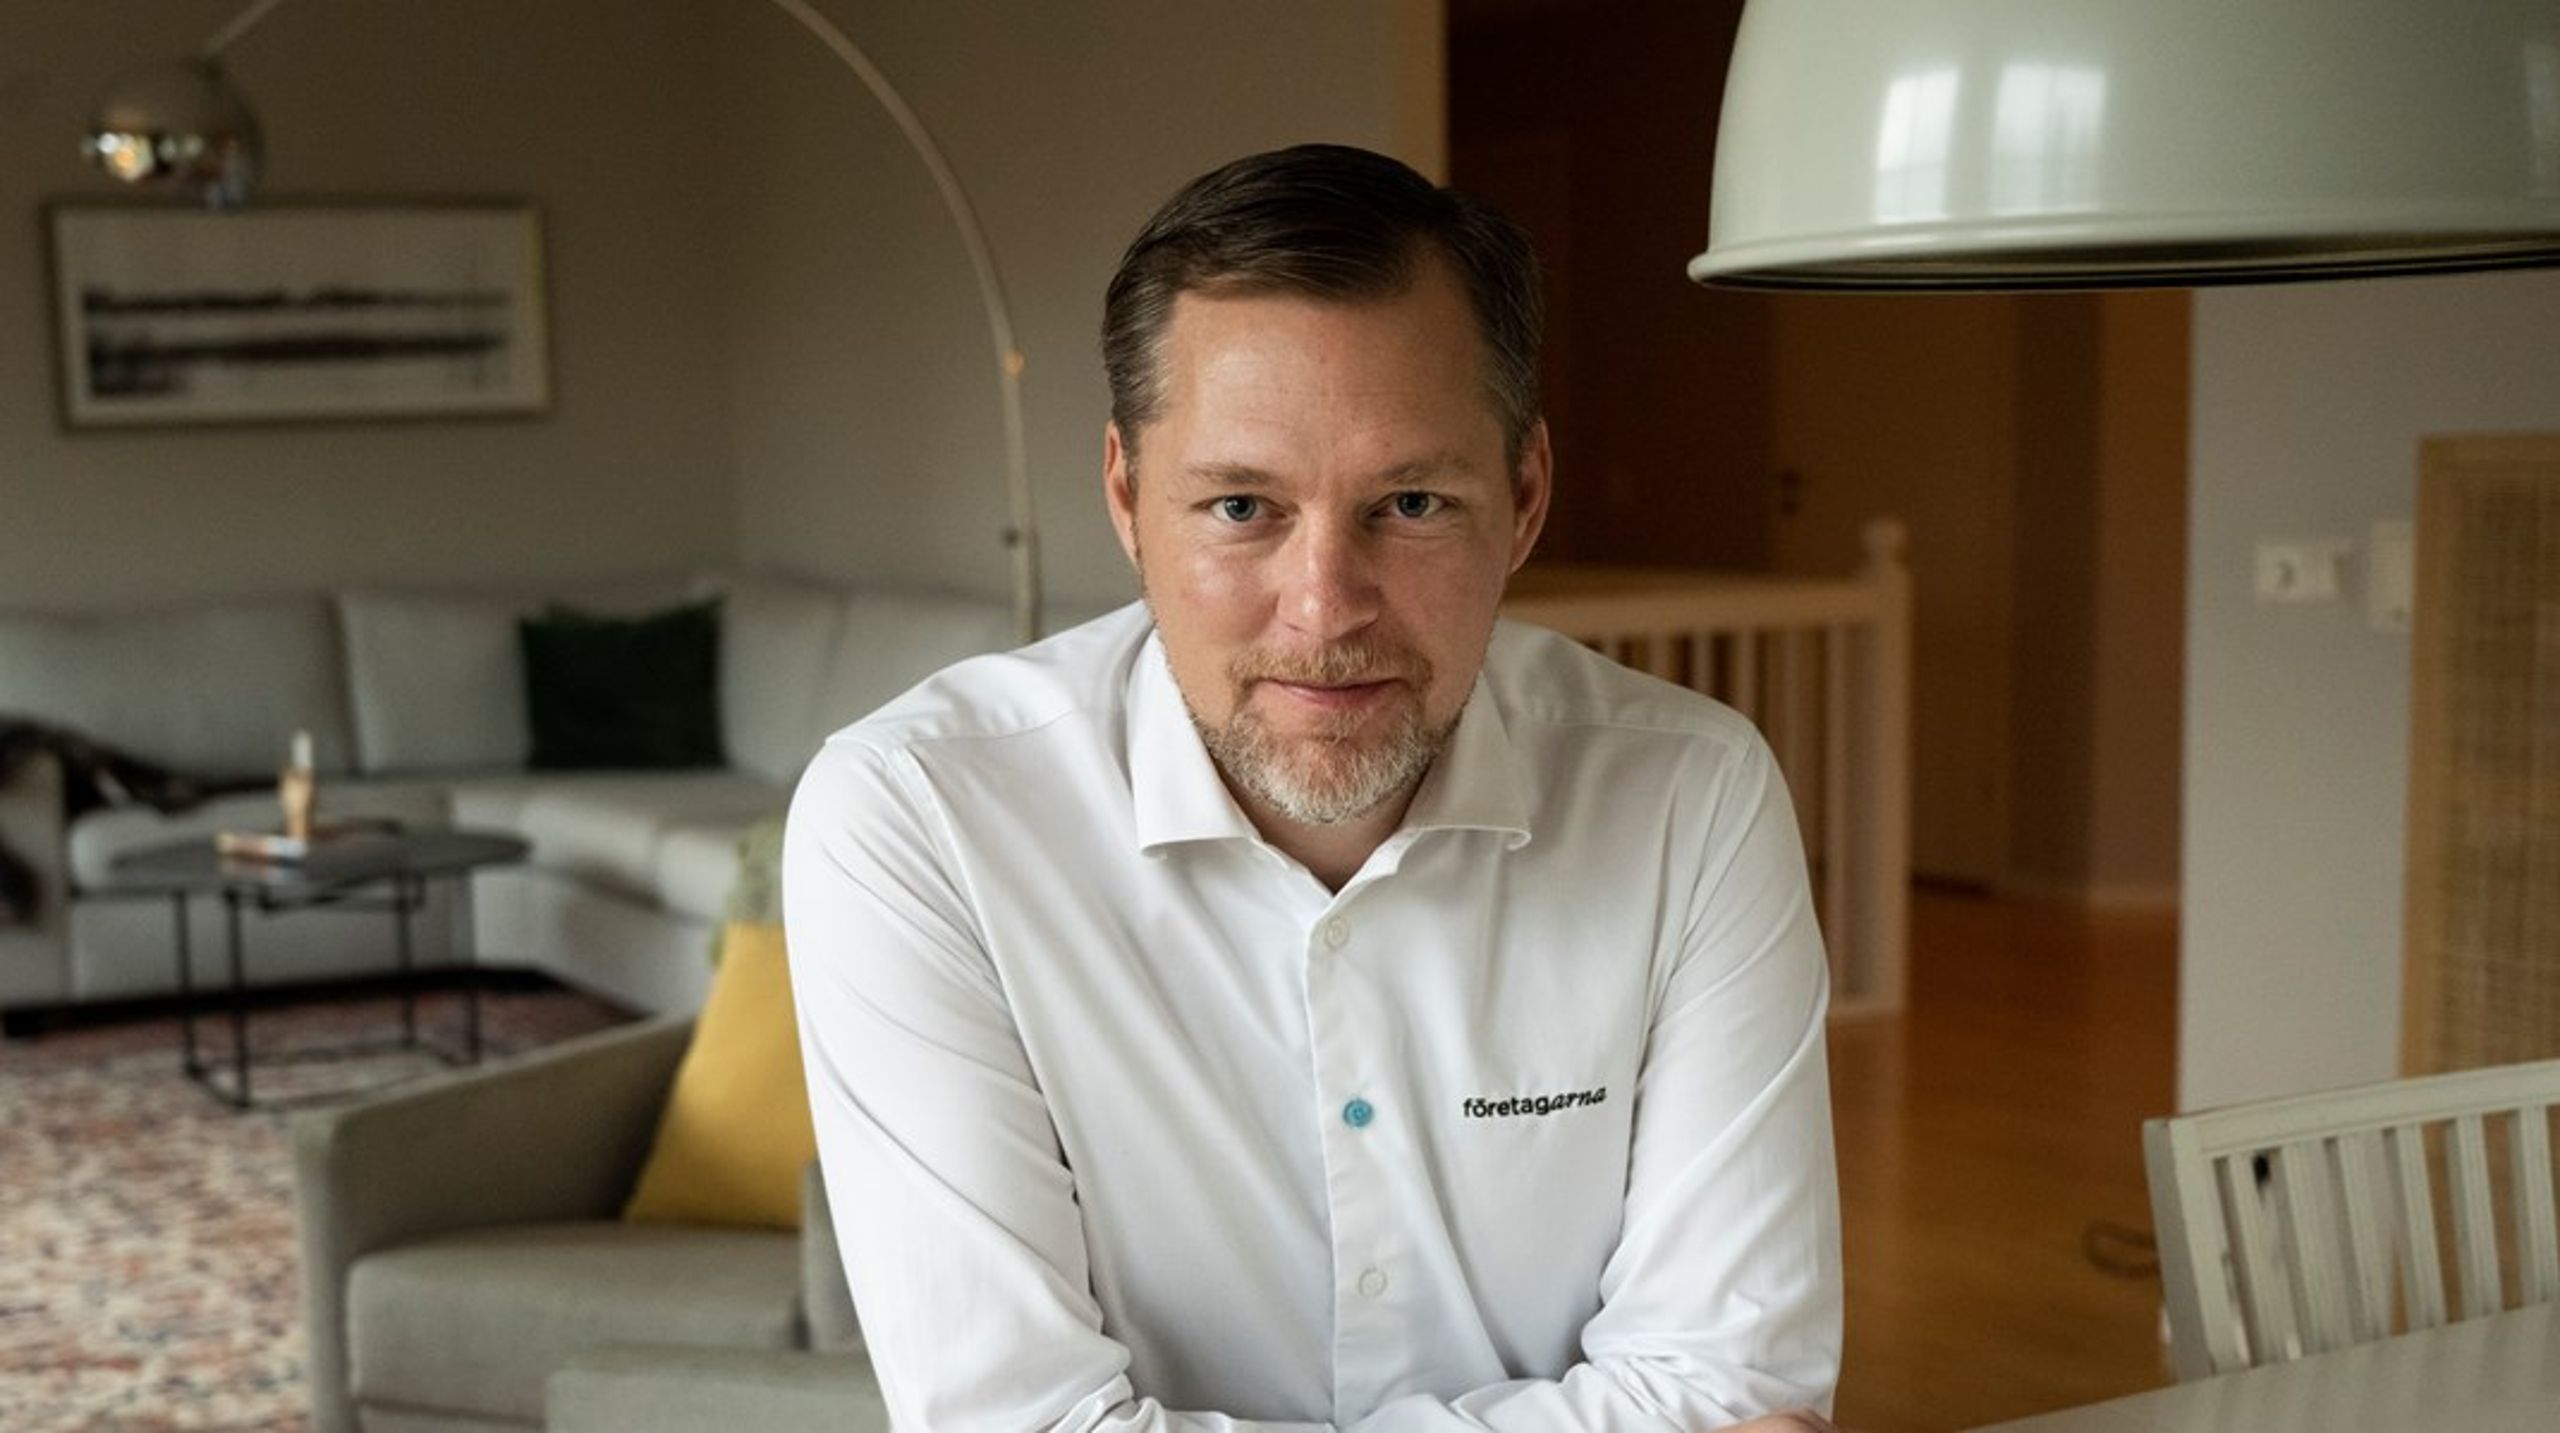 Efter åtta år som vd väljer Günther
Mårder att lämna rollen hos Företagarna.